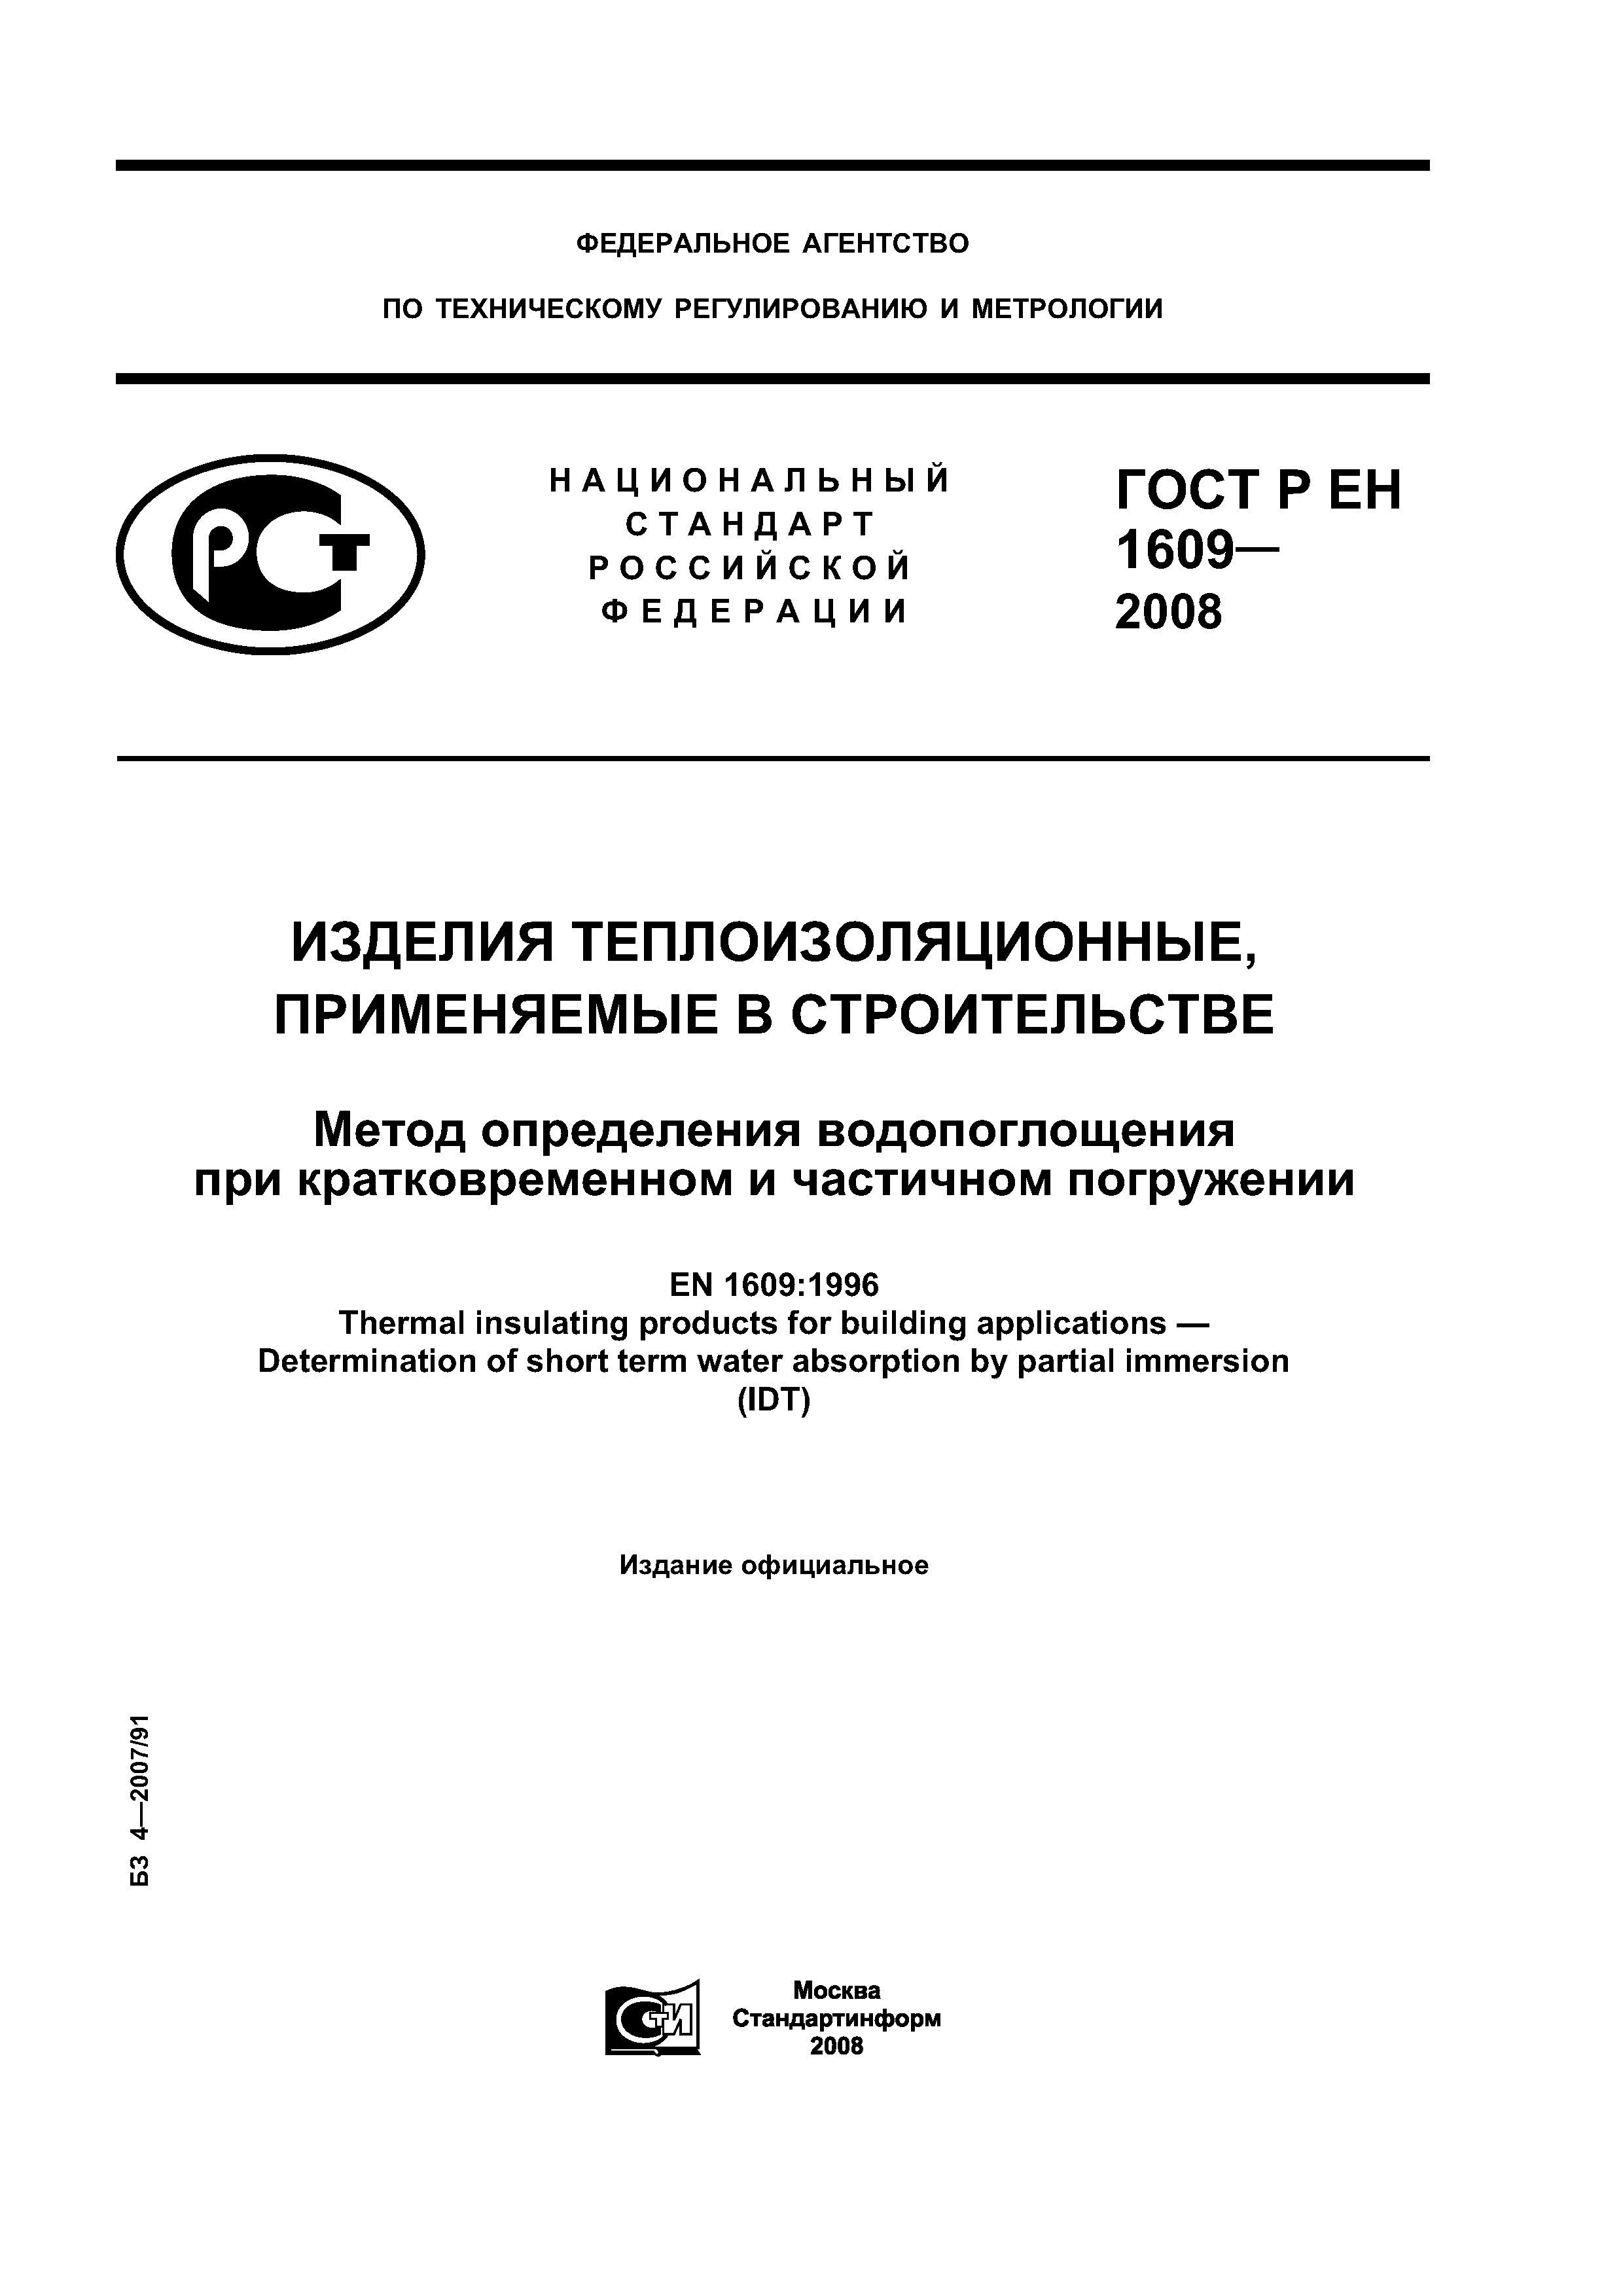 ГОСТ Р ЕН 1609-2008